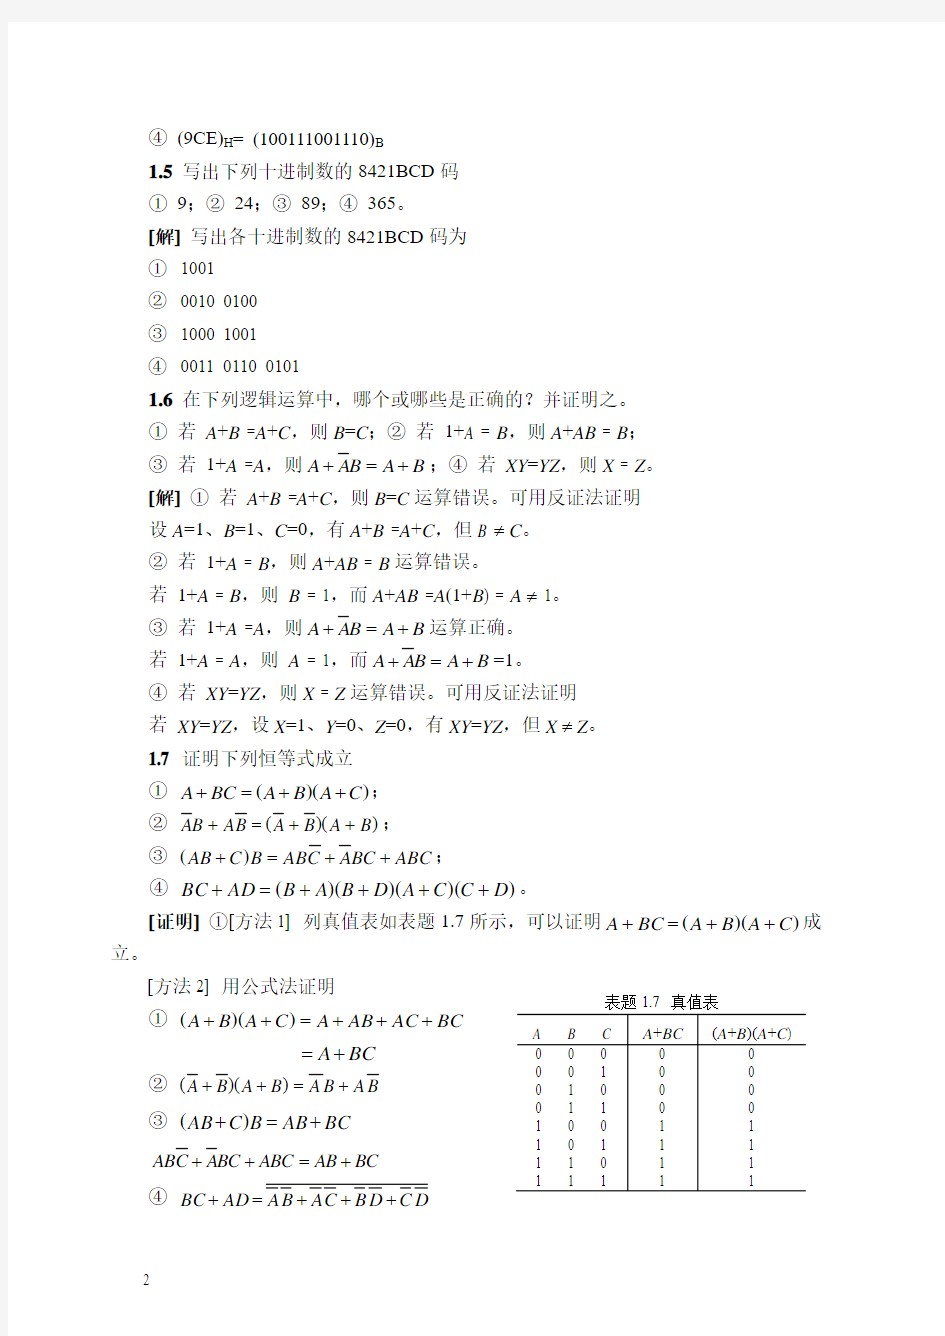 数字习题解答(1-3)张克农 (1) 2